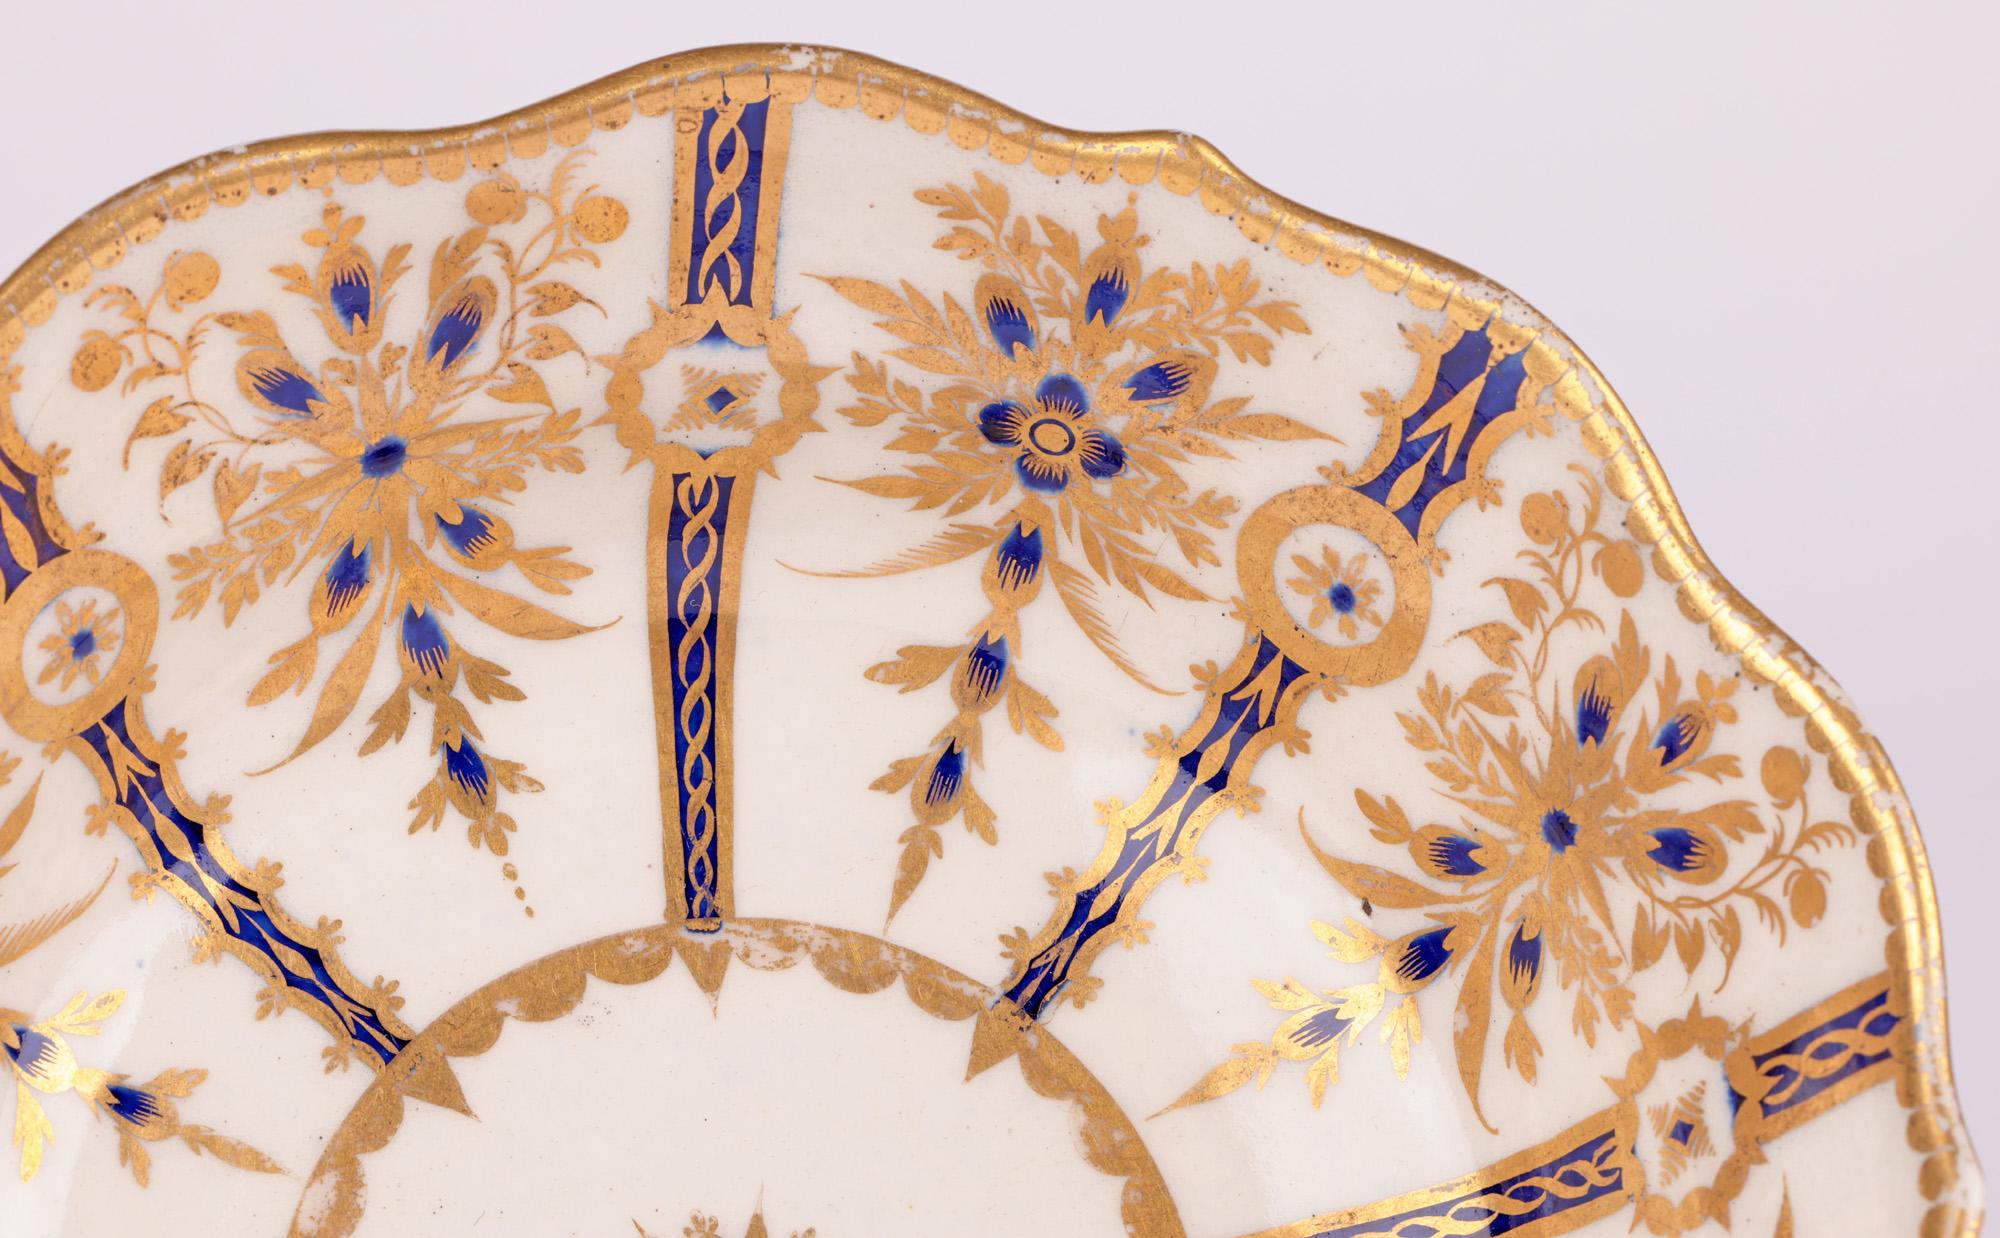 Eine sehr feine und ungewöhnliche englische Worcester First oder Dr Wall Periode Porzellanschale mit geformter Form mit fein applizierten vergoldeten und blauen Designs aus der Zeit zwischen 1751 und 1783. Die Schale steht auf einem breiten, runden